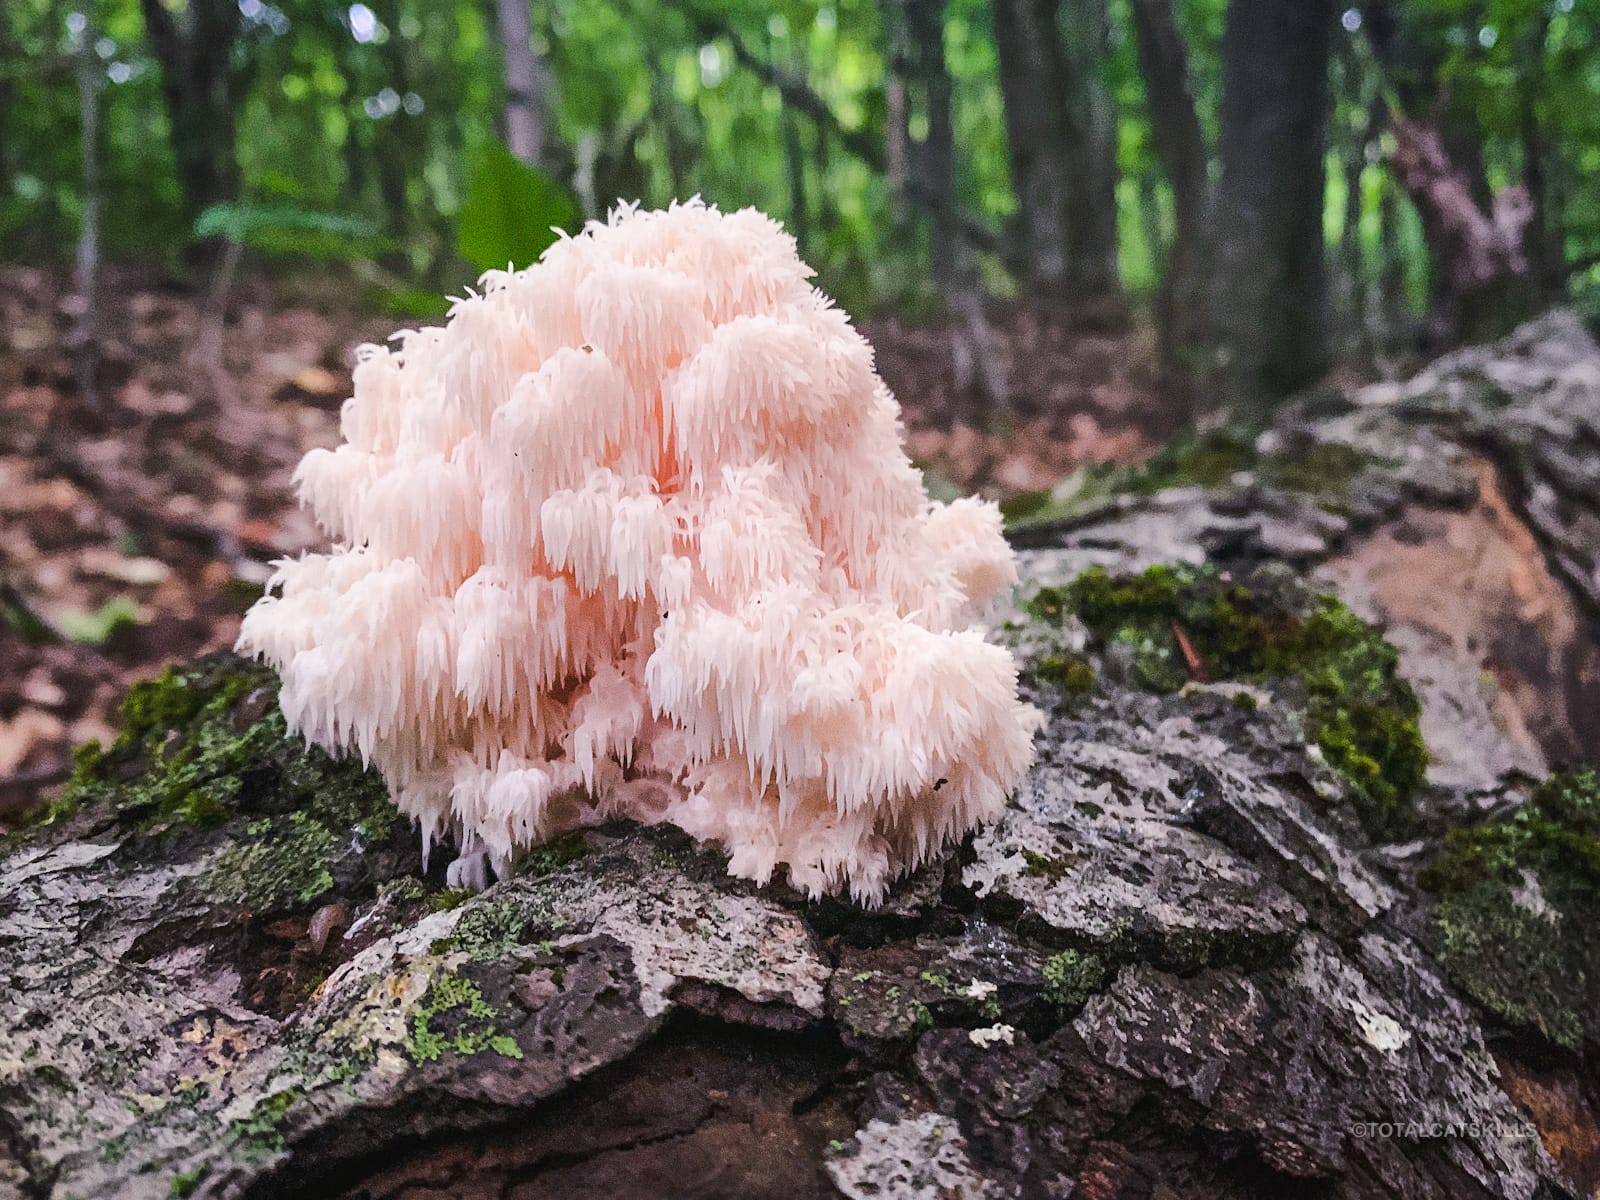 mushroom growing on stump